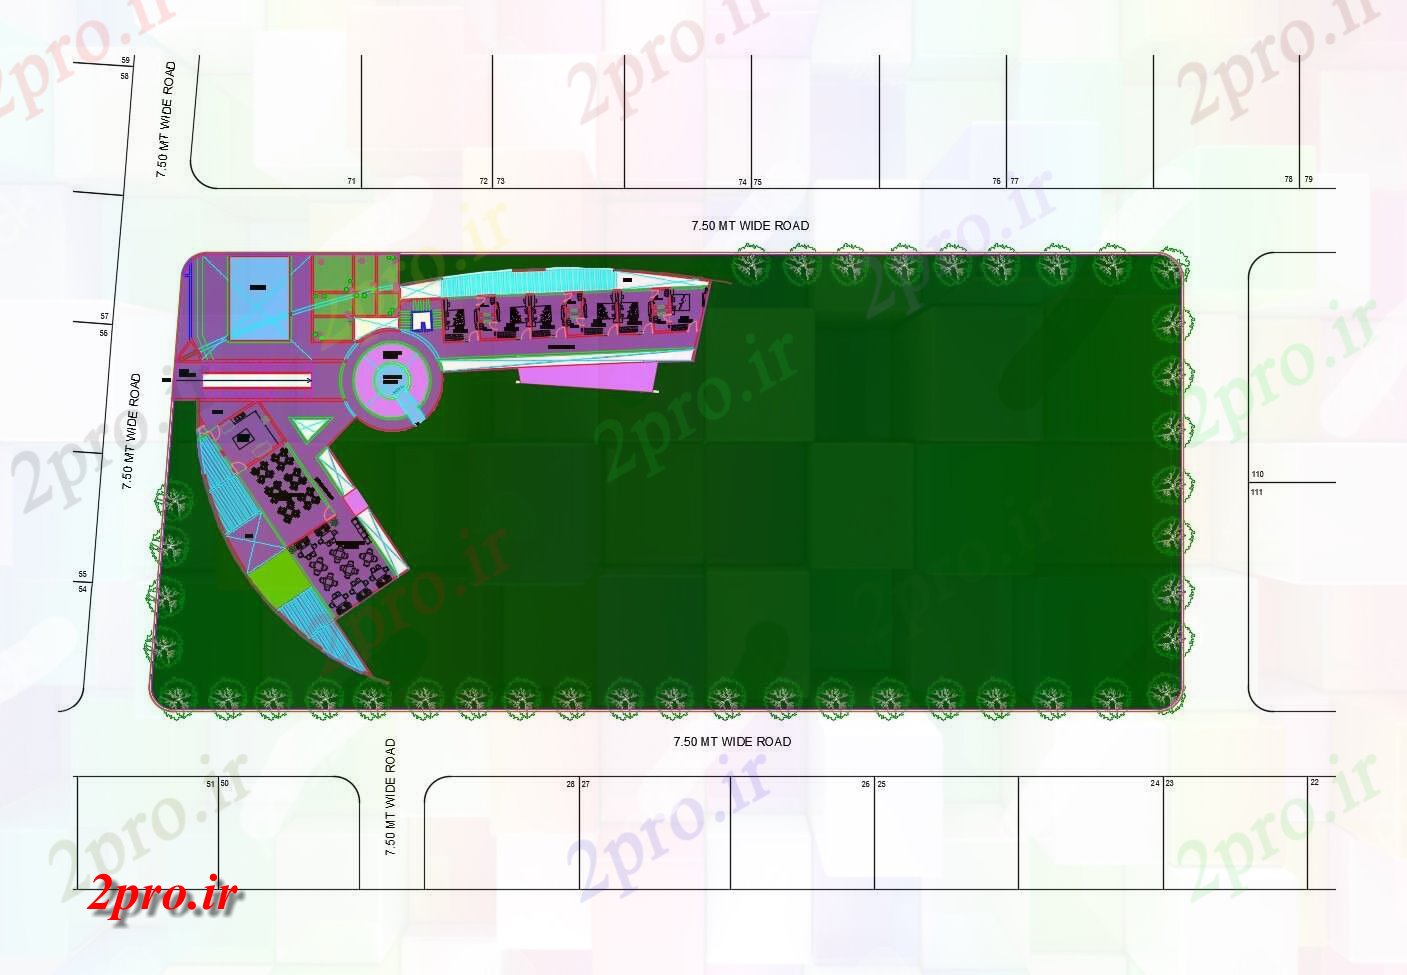 دانلود نقشه باشگاه طرحی سایت از محل باشگاه وانجمن با ابعاد جزئیات 43 در 60 متر (کد85659)